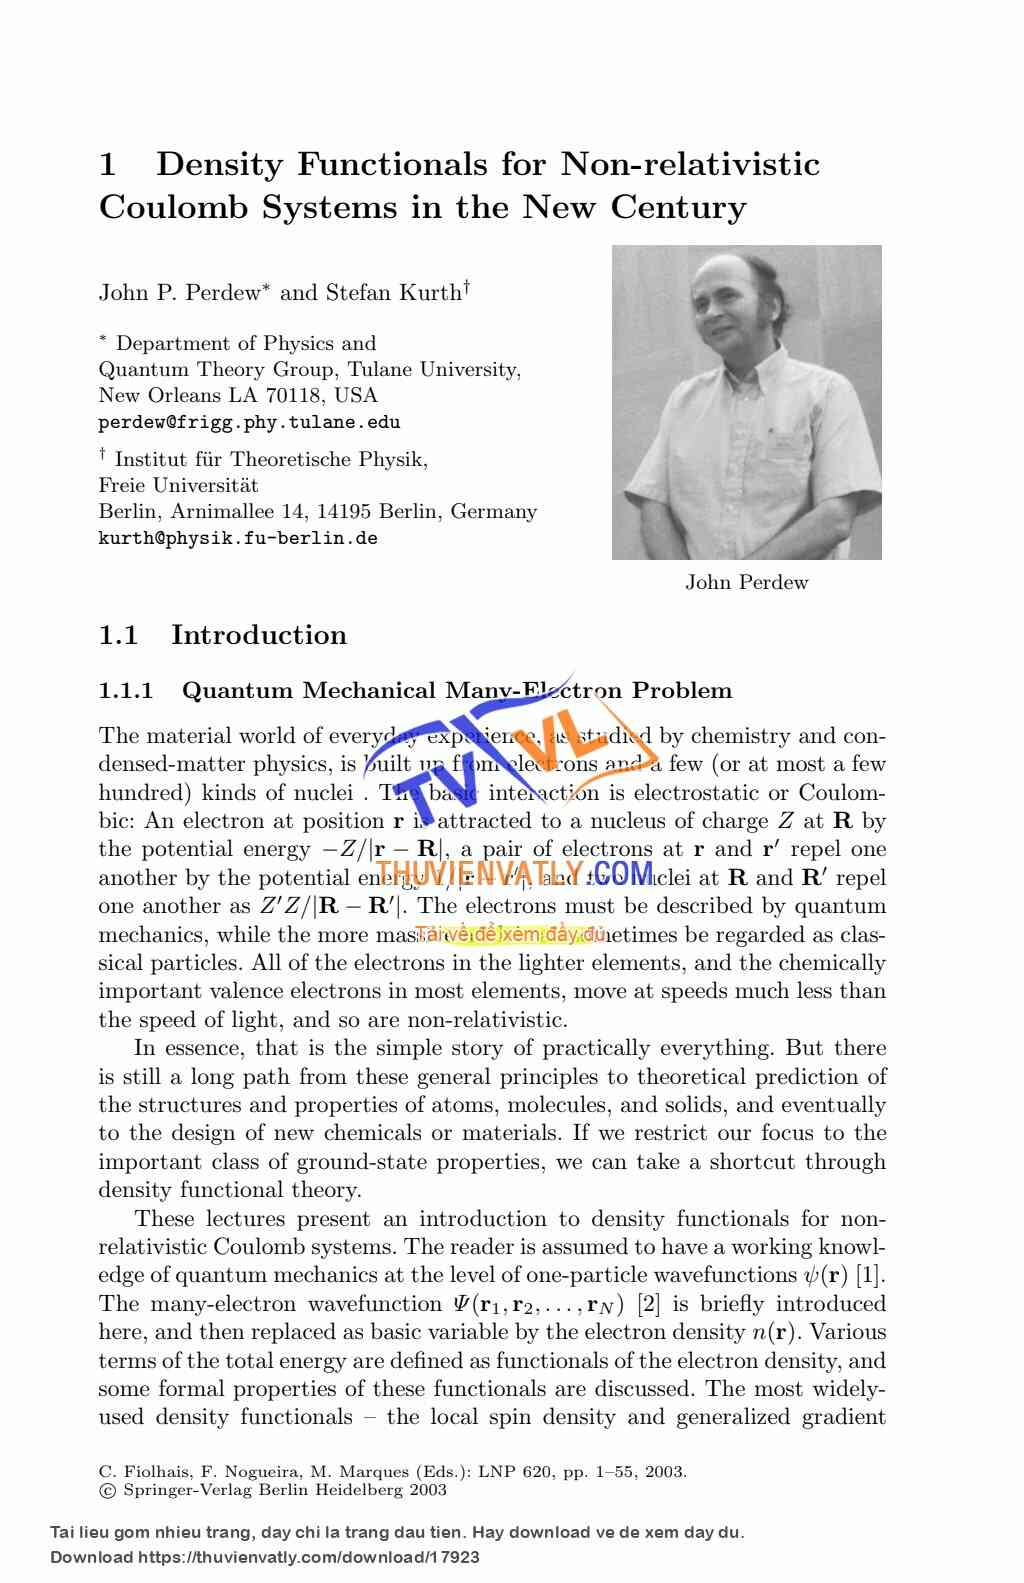 Density Functional Theory - Perdew.J.P 2003